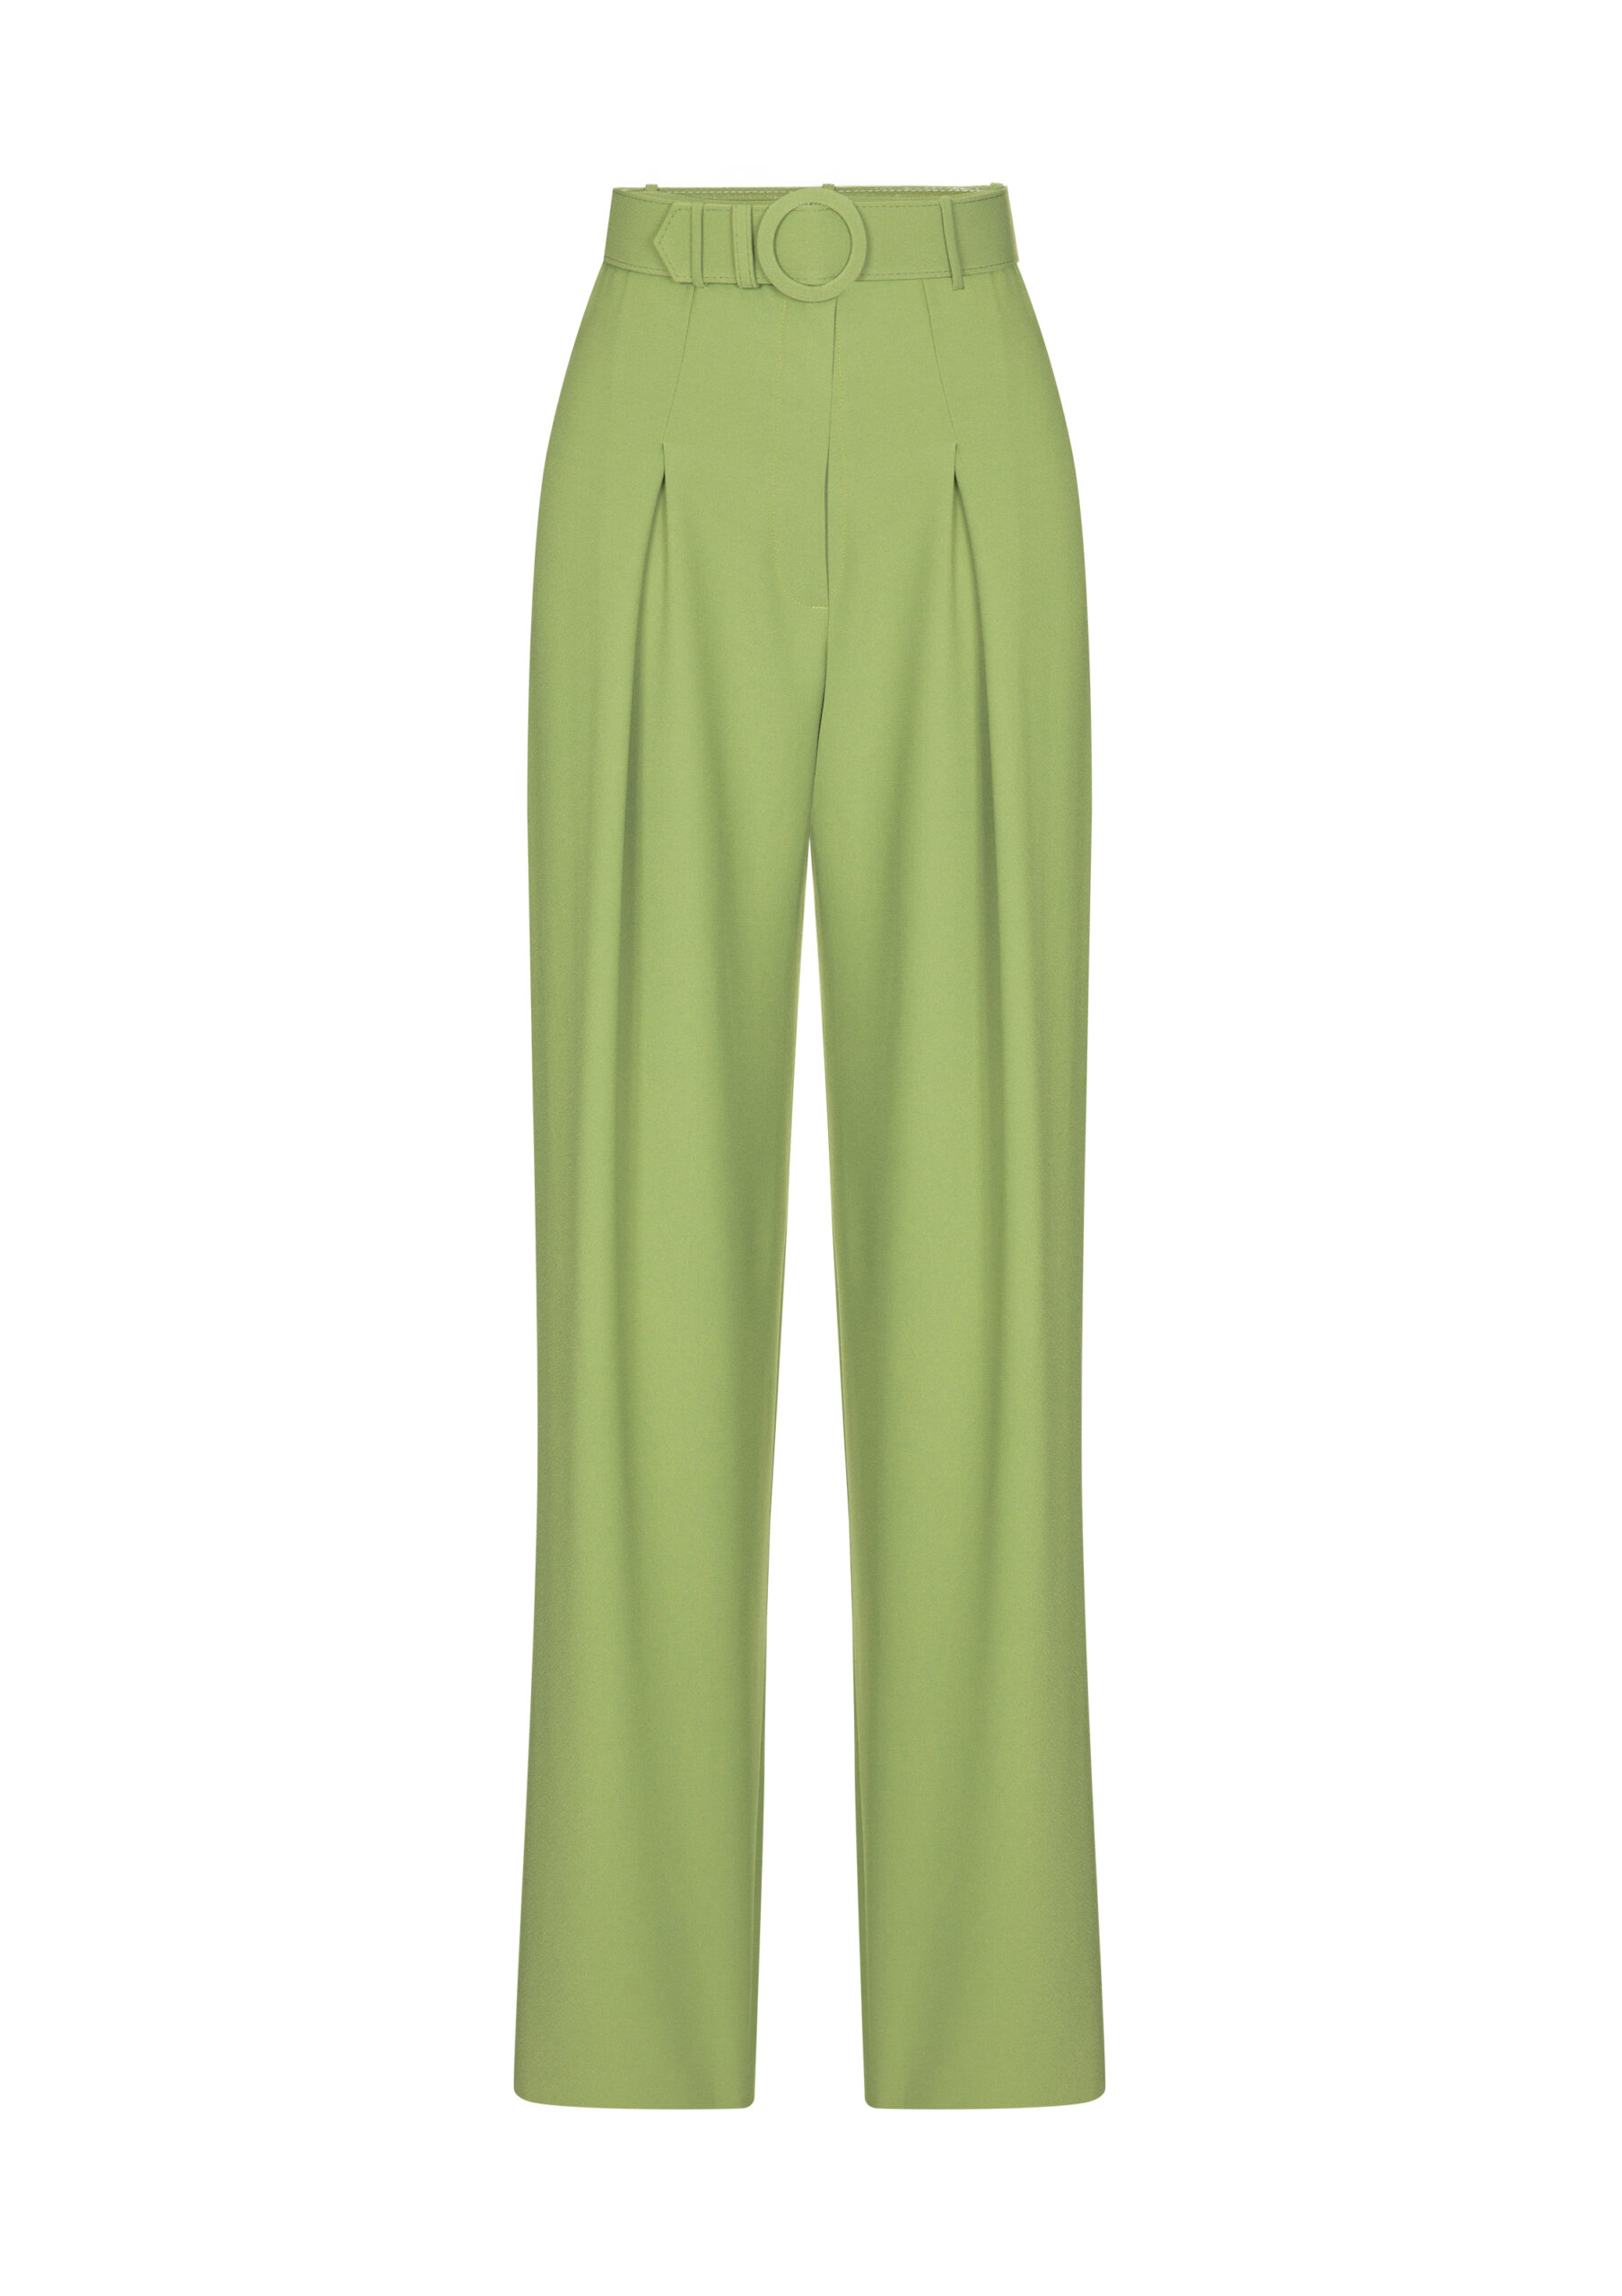 Belted Trousers Green - F.ILKK